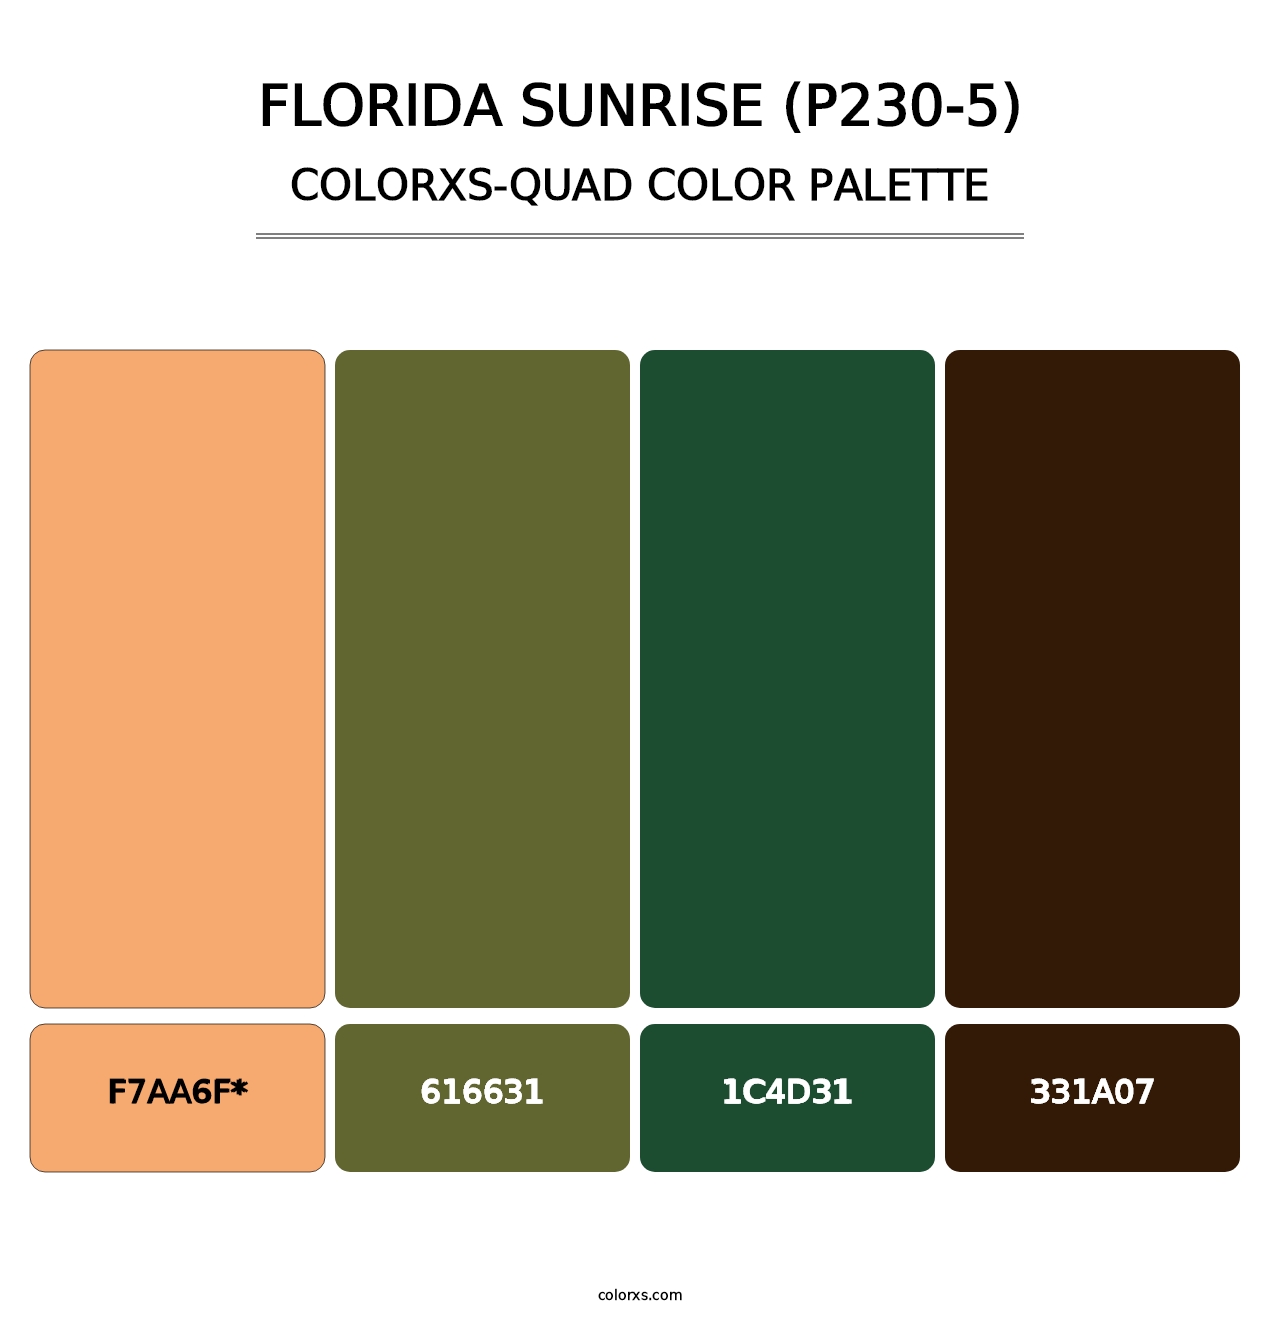 Florida Sunrise (P230-5) - Colorxs Quad Palette